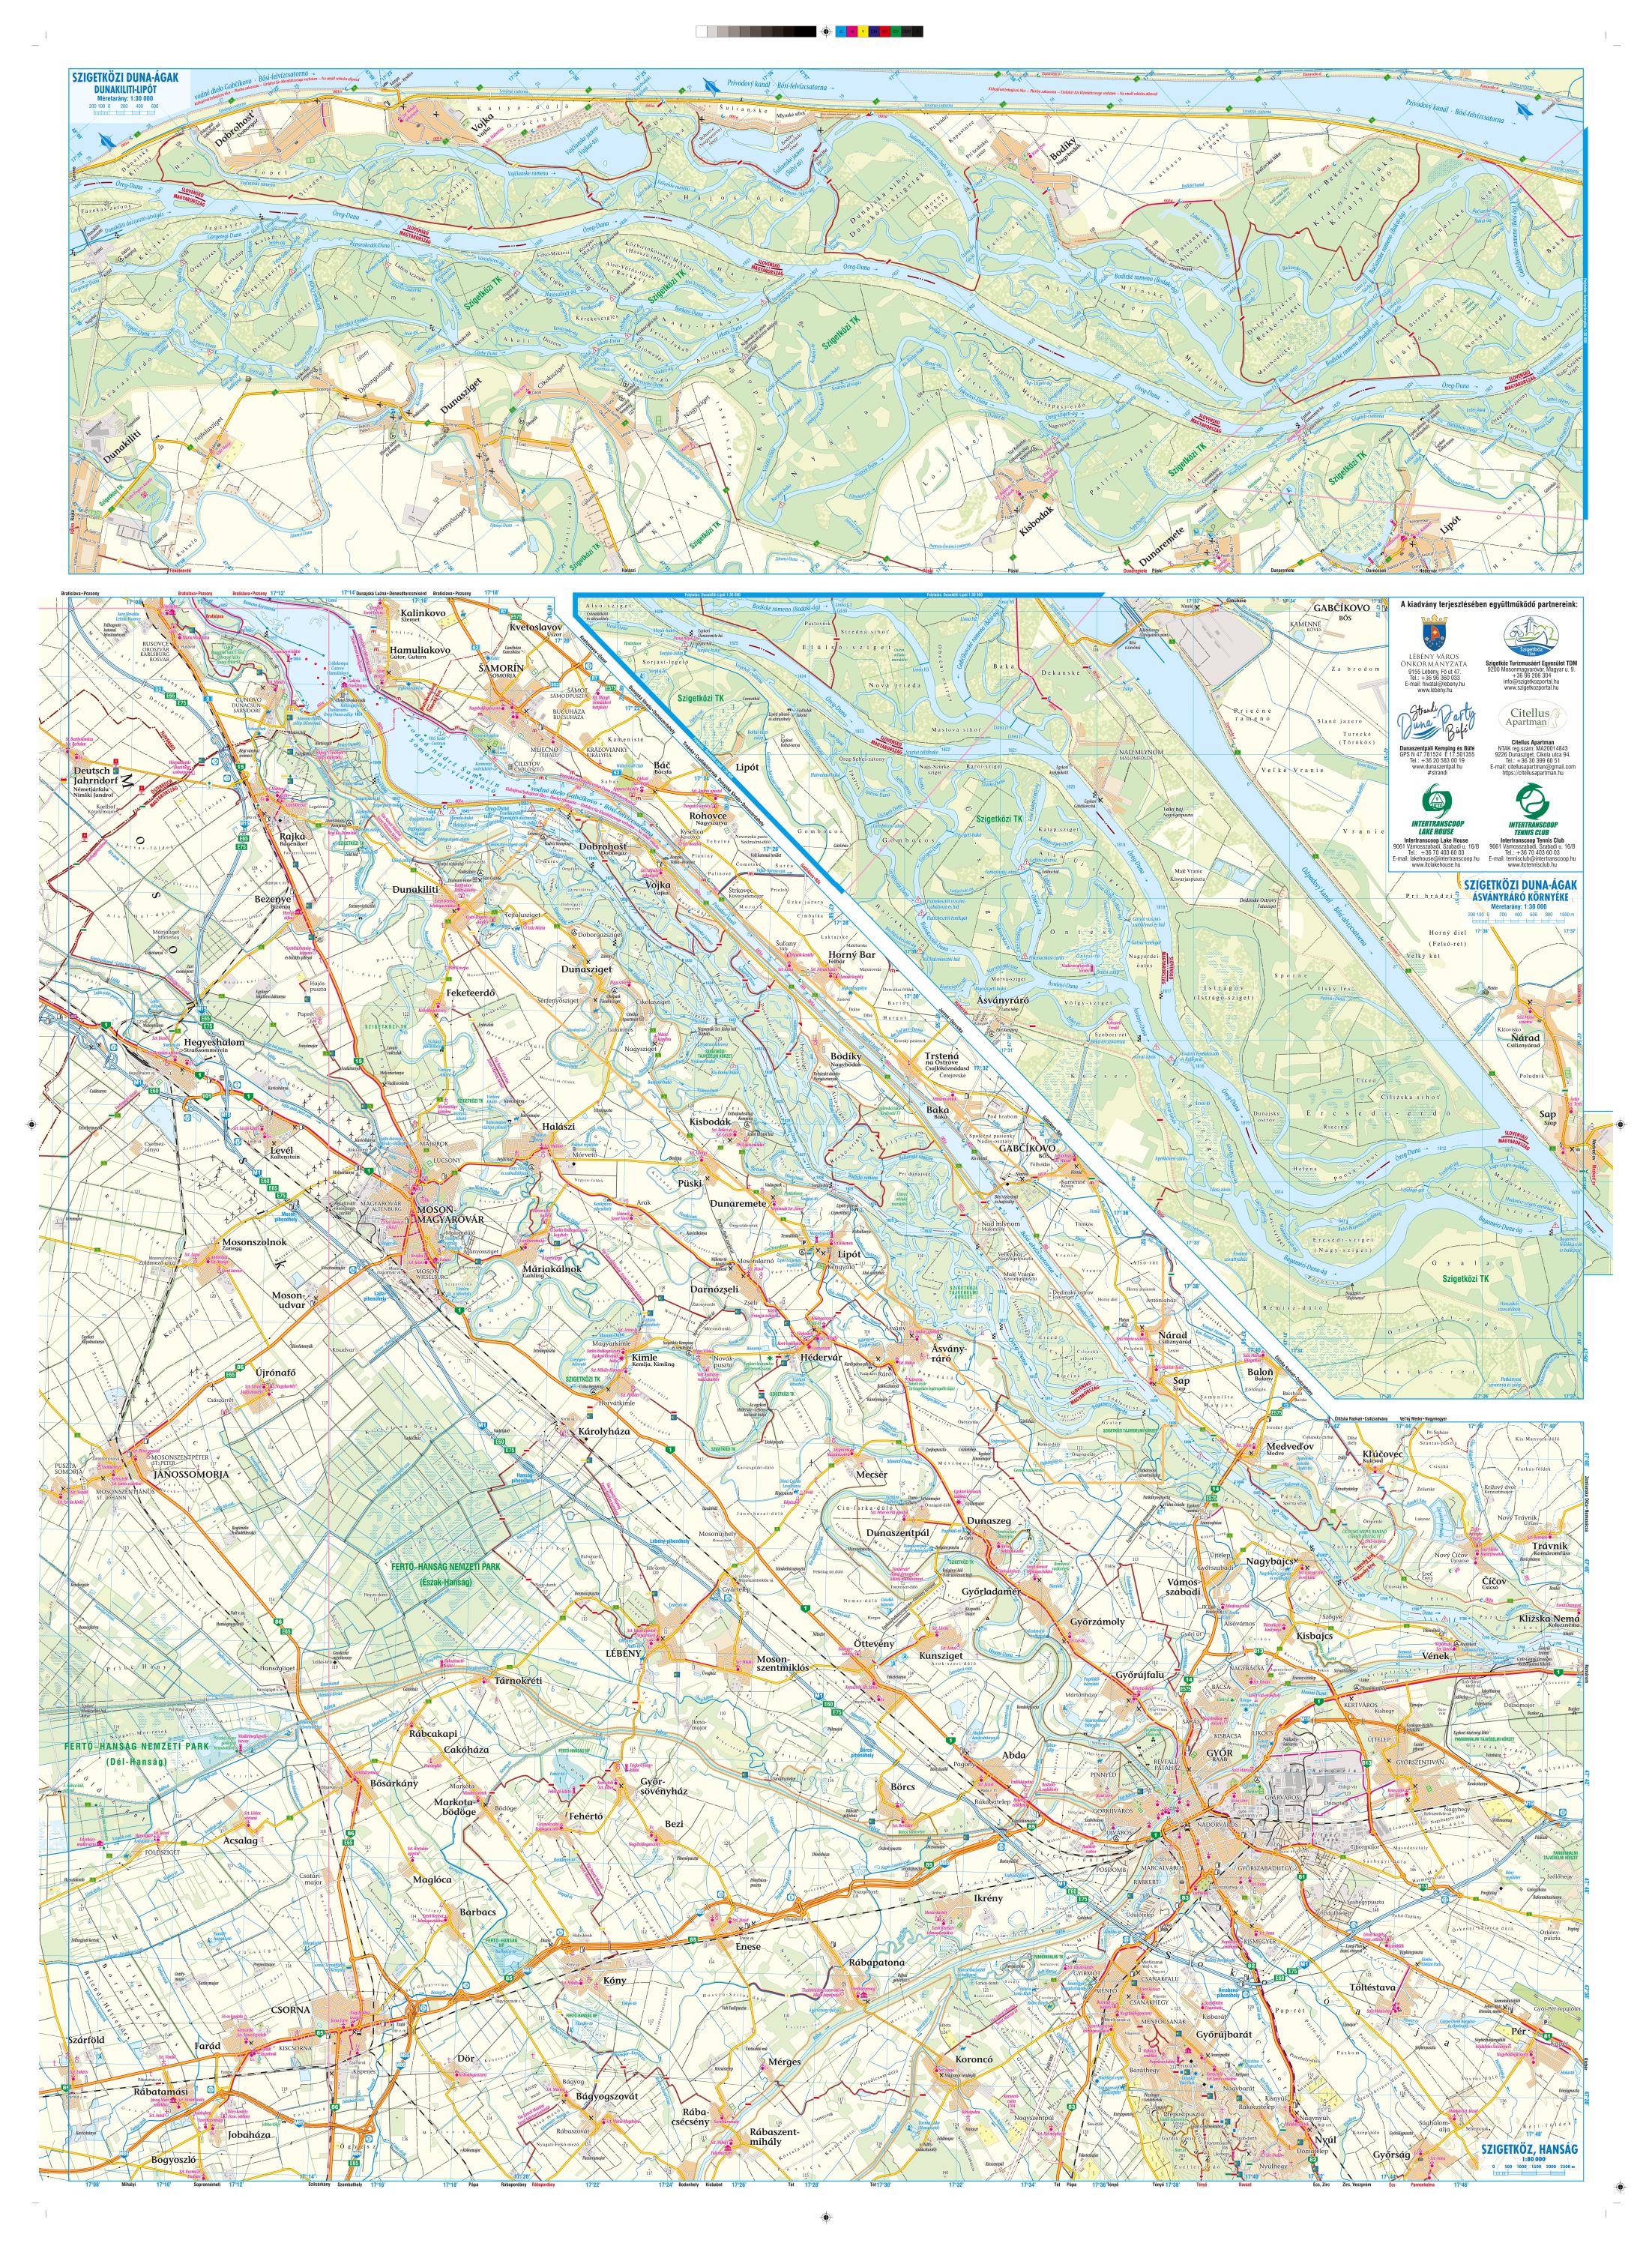 A Szigetköz, Hanság térkép által lefedett terület